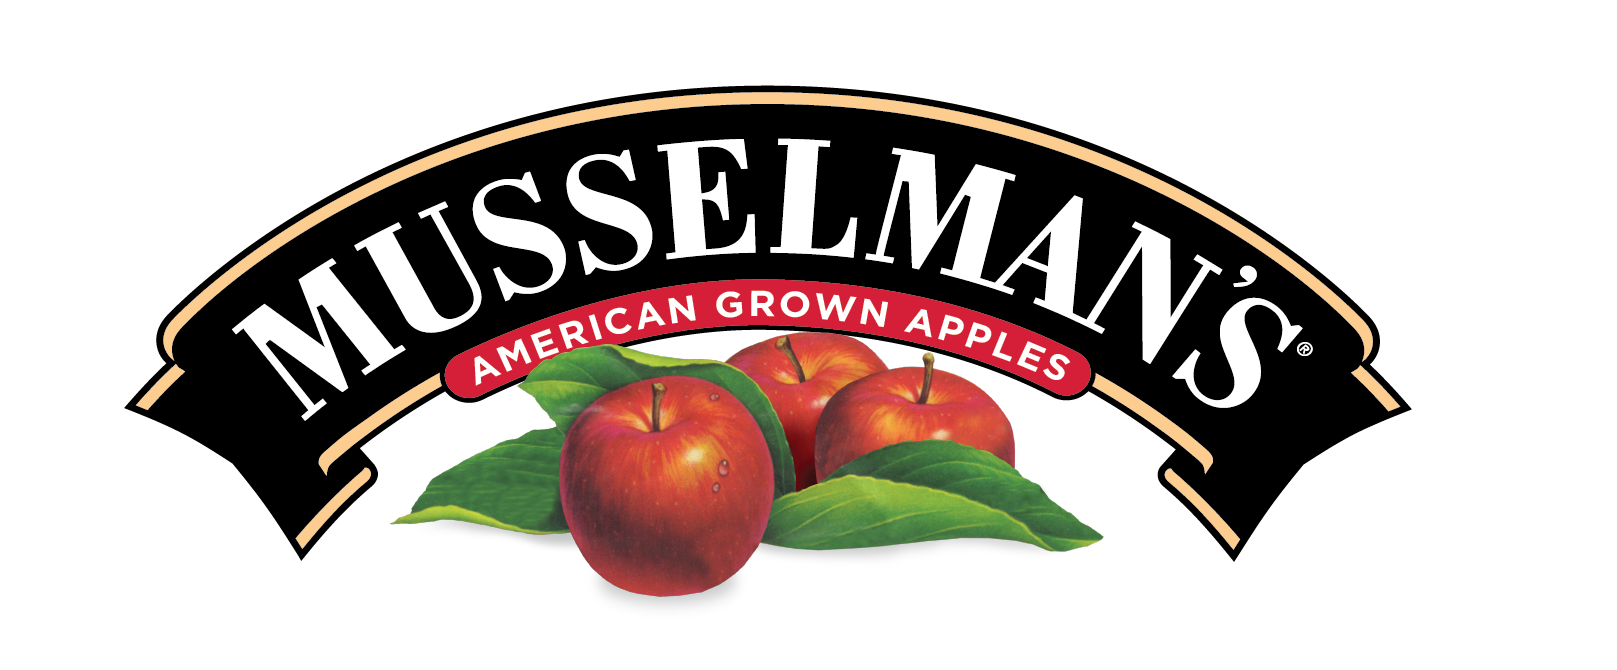 Musslemans Musselman's Key Lime Pie de llenado de 40185